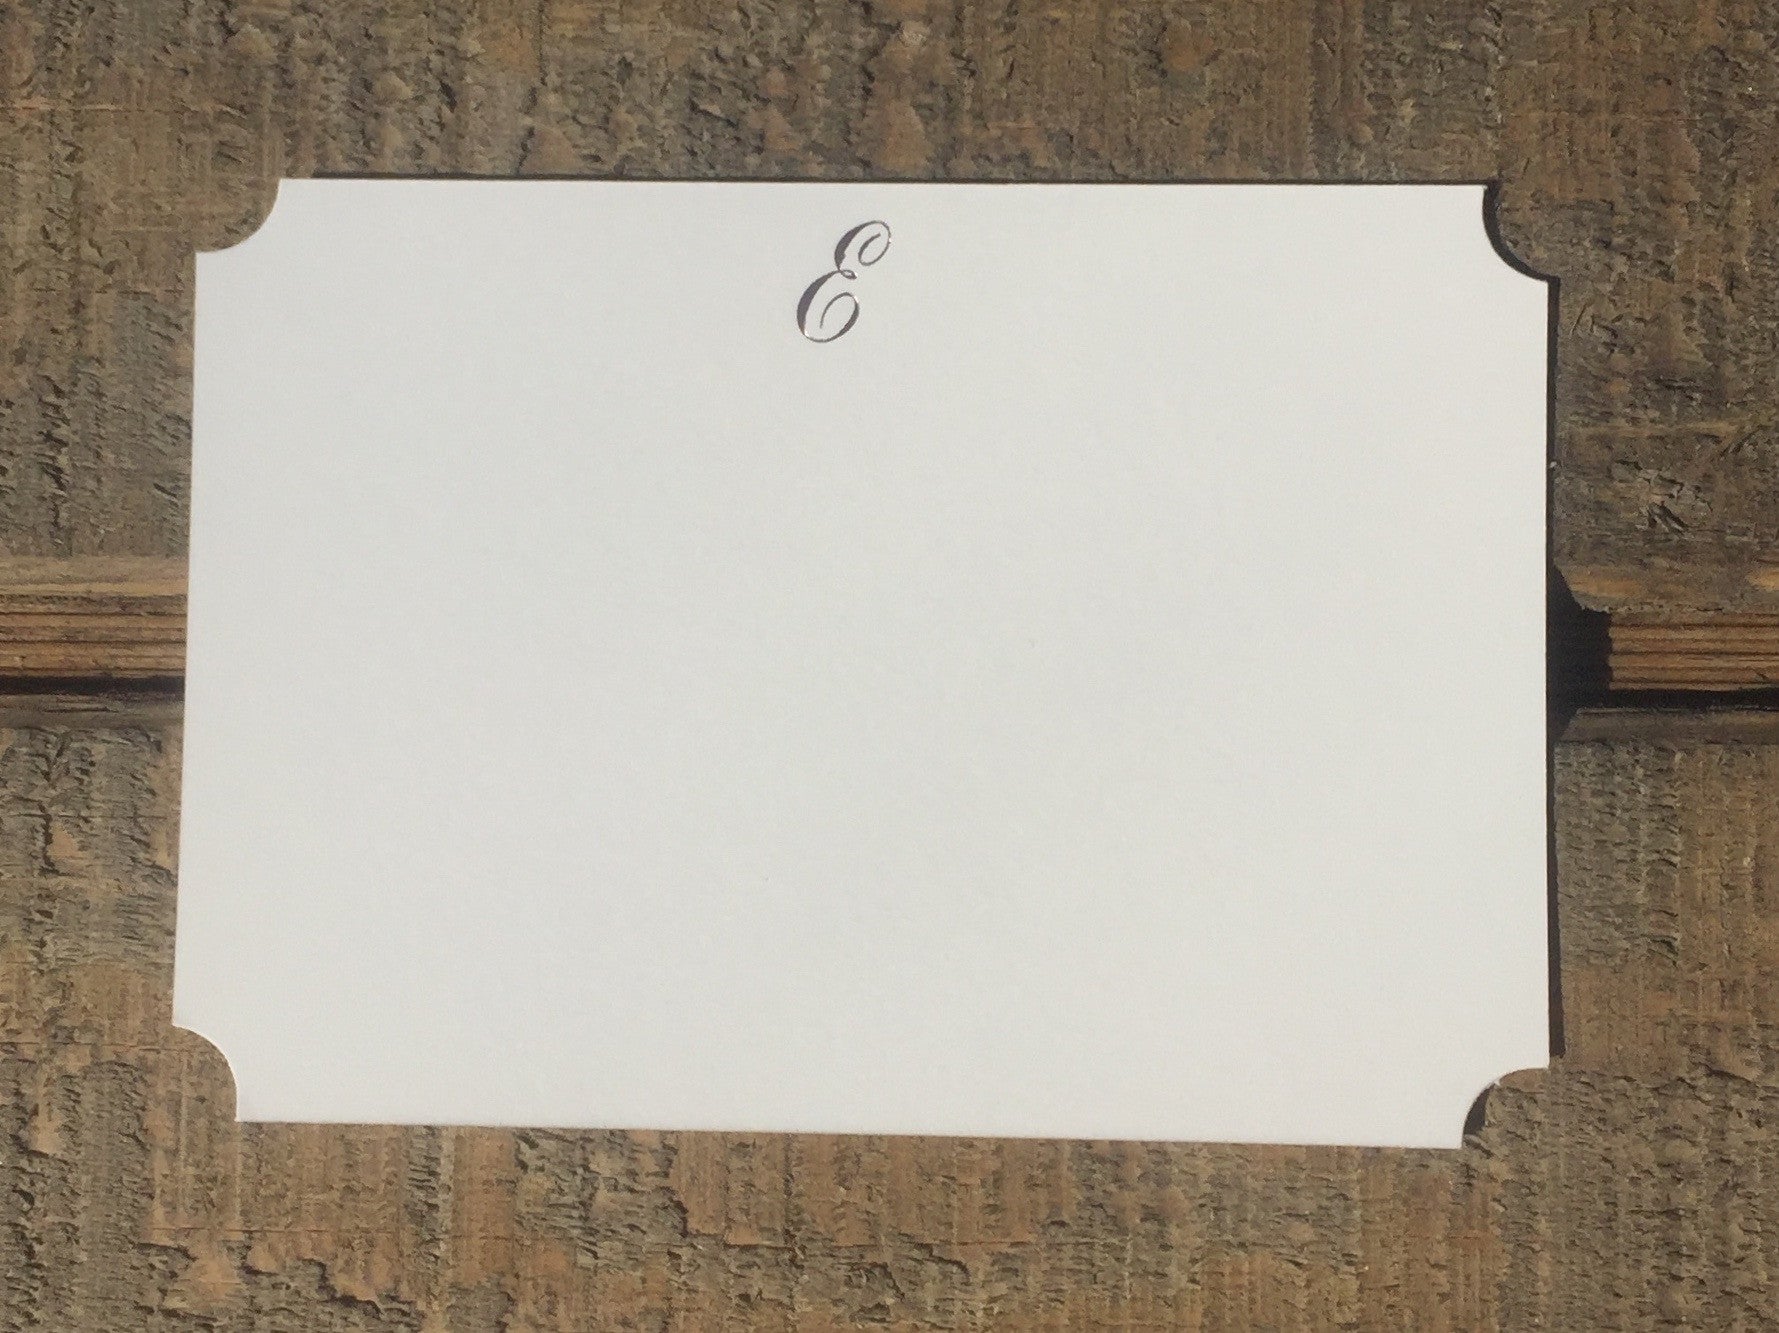 Foil-pressed Script Initial Cards - PARCEL